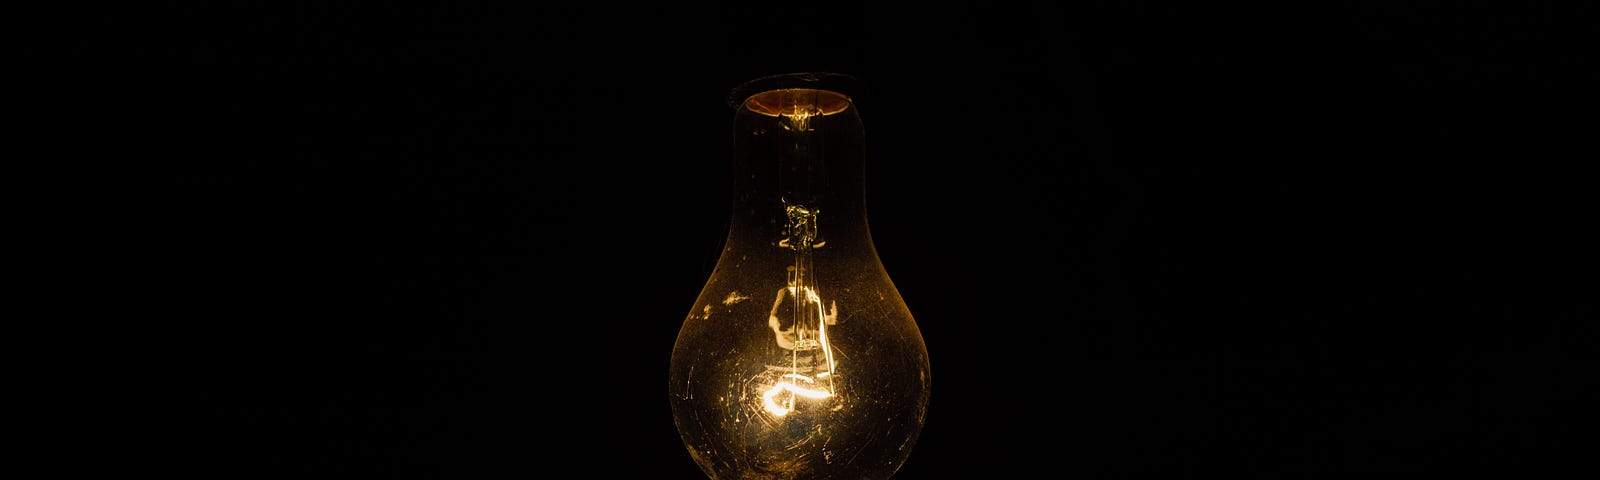 The flickering light bulb